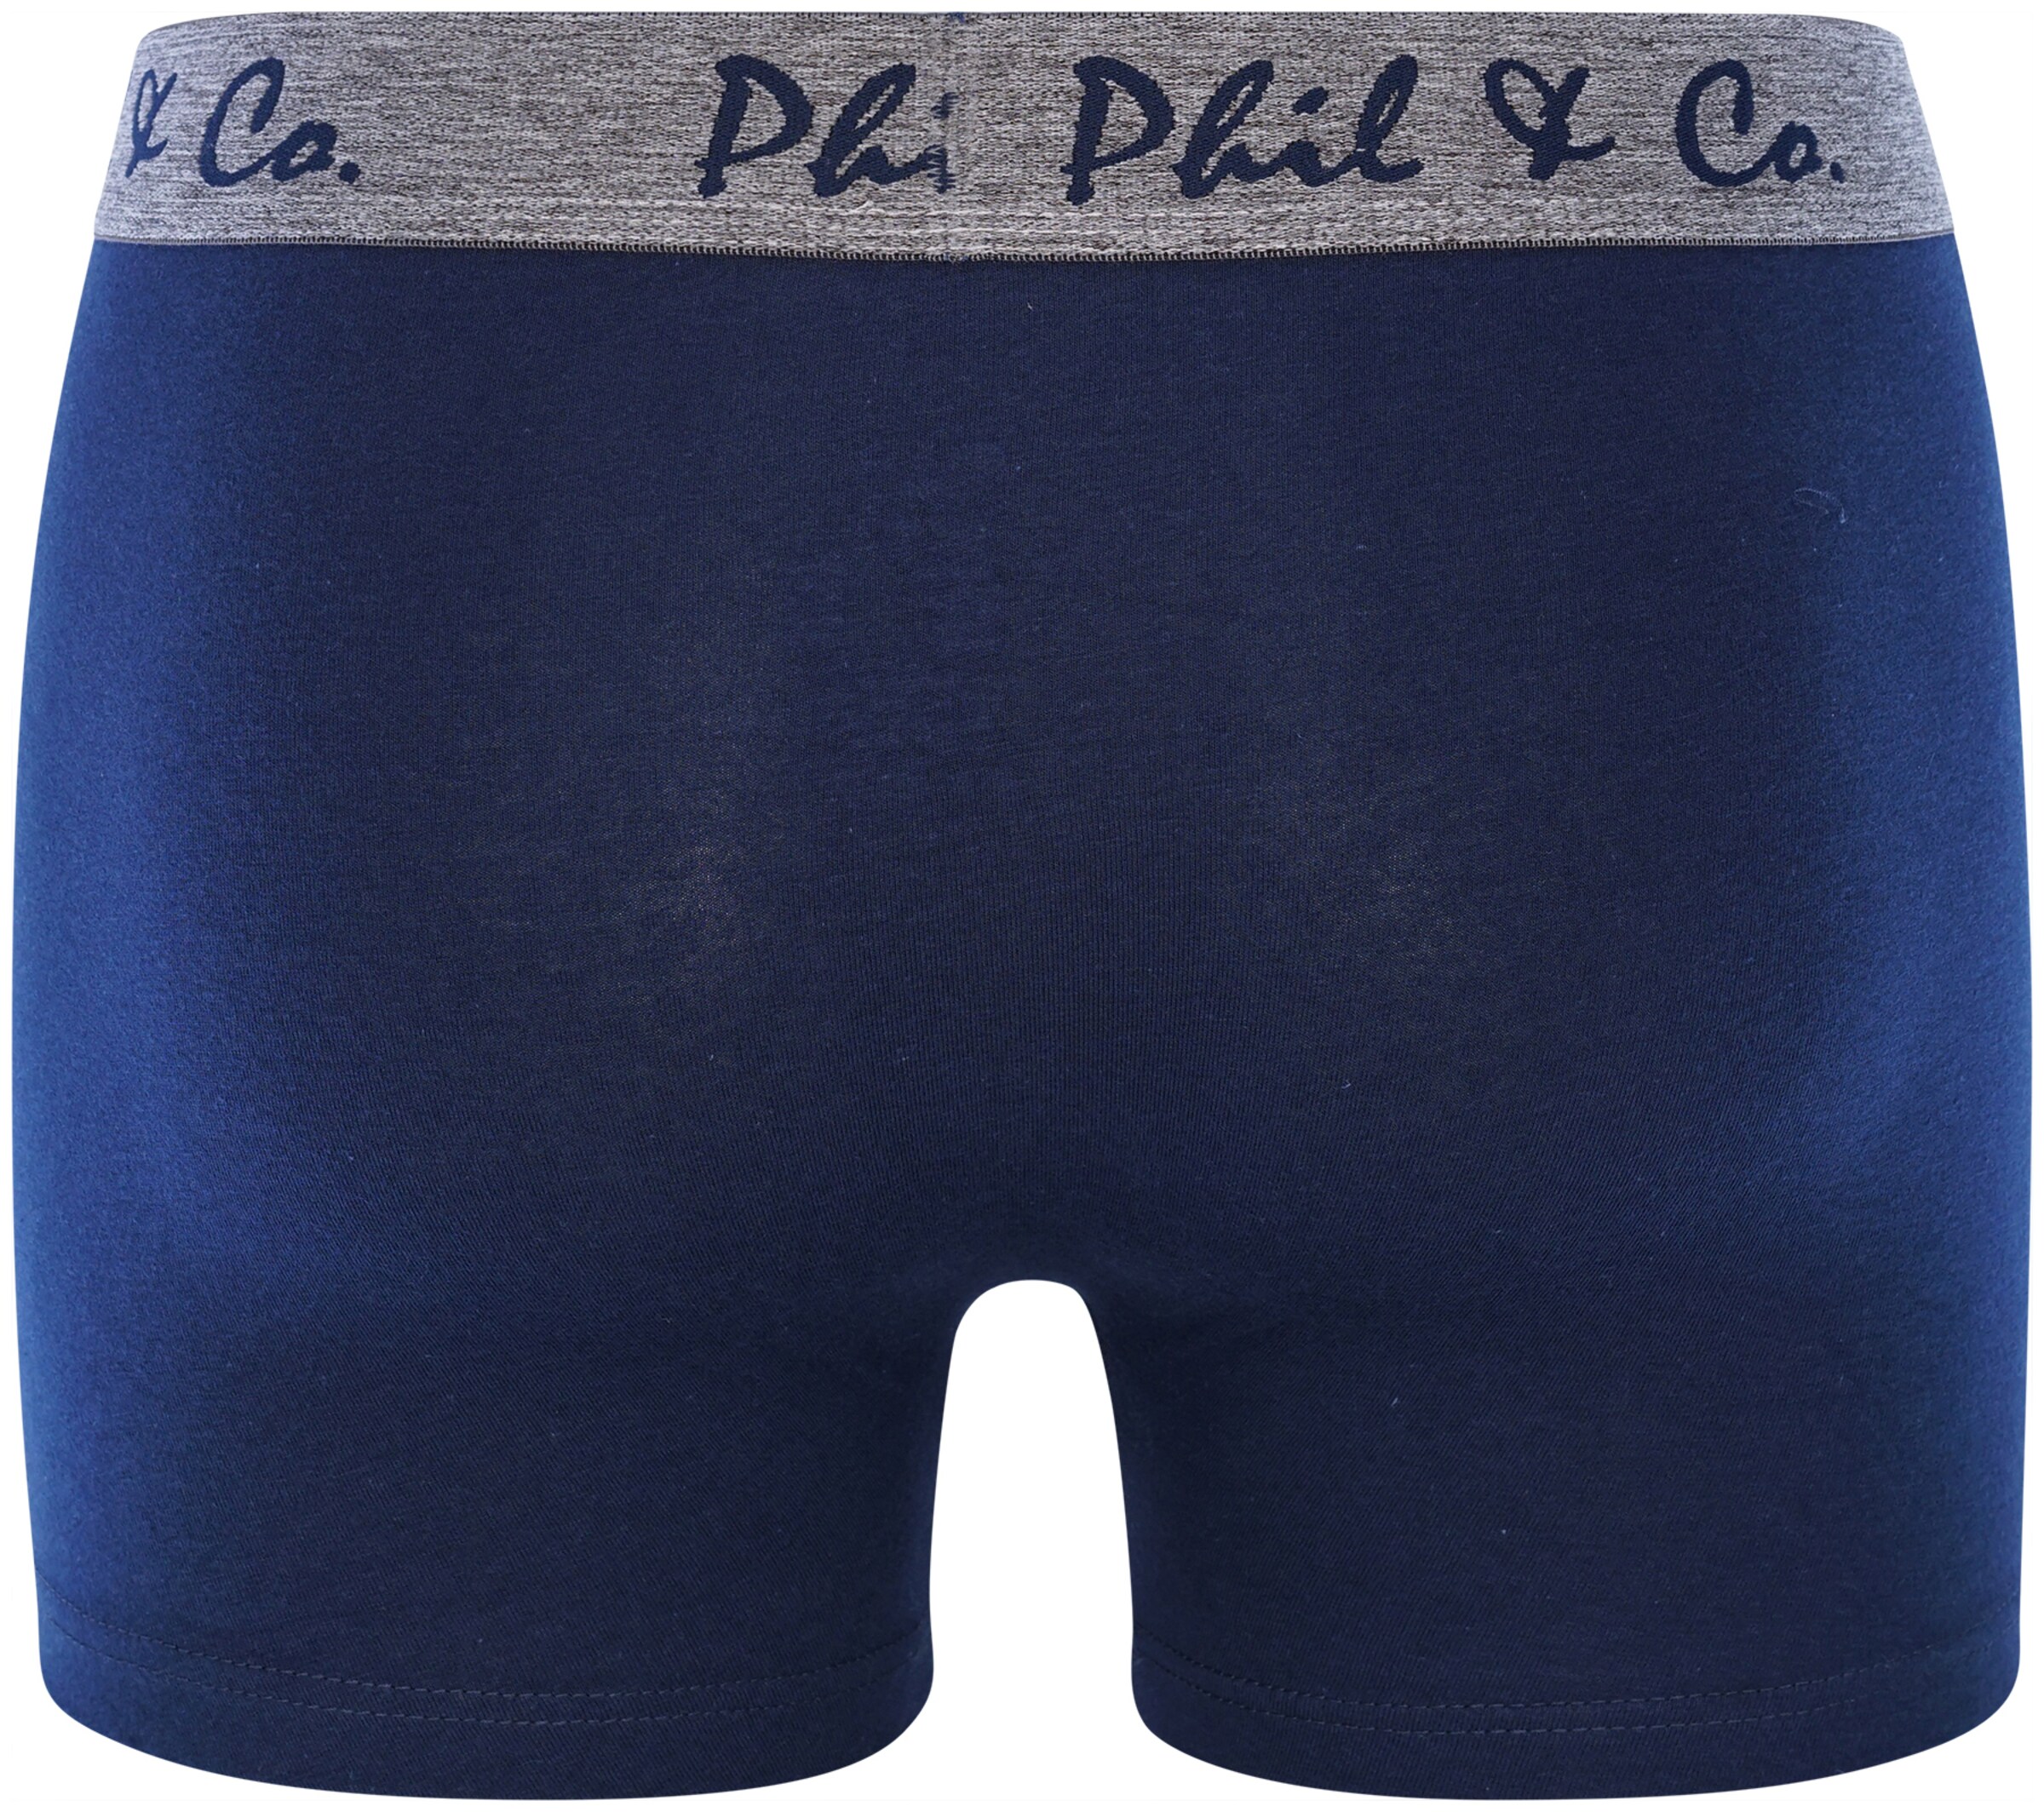 Sous-vêtements Boxers Retro Phil & Co. Berlin en Bleu Foncé, Gris 